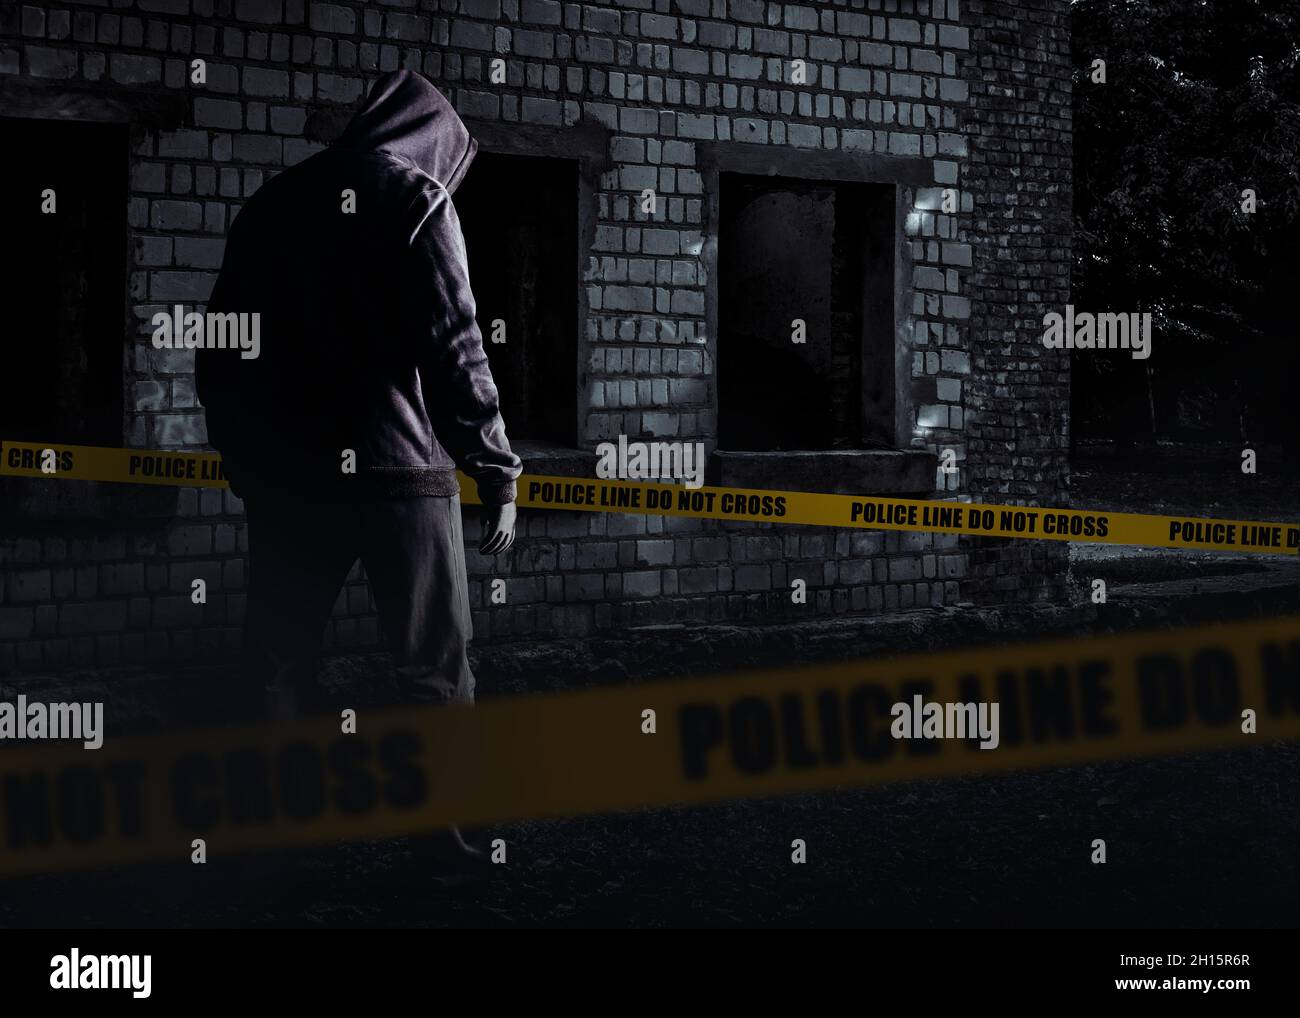 Foto des unheimlichen Horror fremden Stalker Mann in schwarzer Kapuze und Kleidung auf verlassenen Gebäude Hintergrund mit Polizei-Linie Streifen. Stockfoto